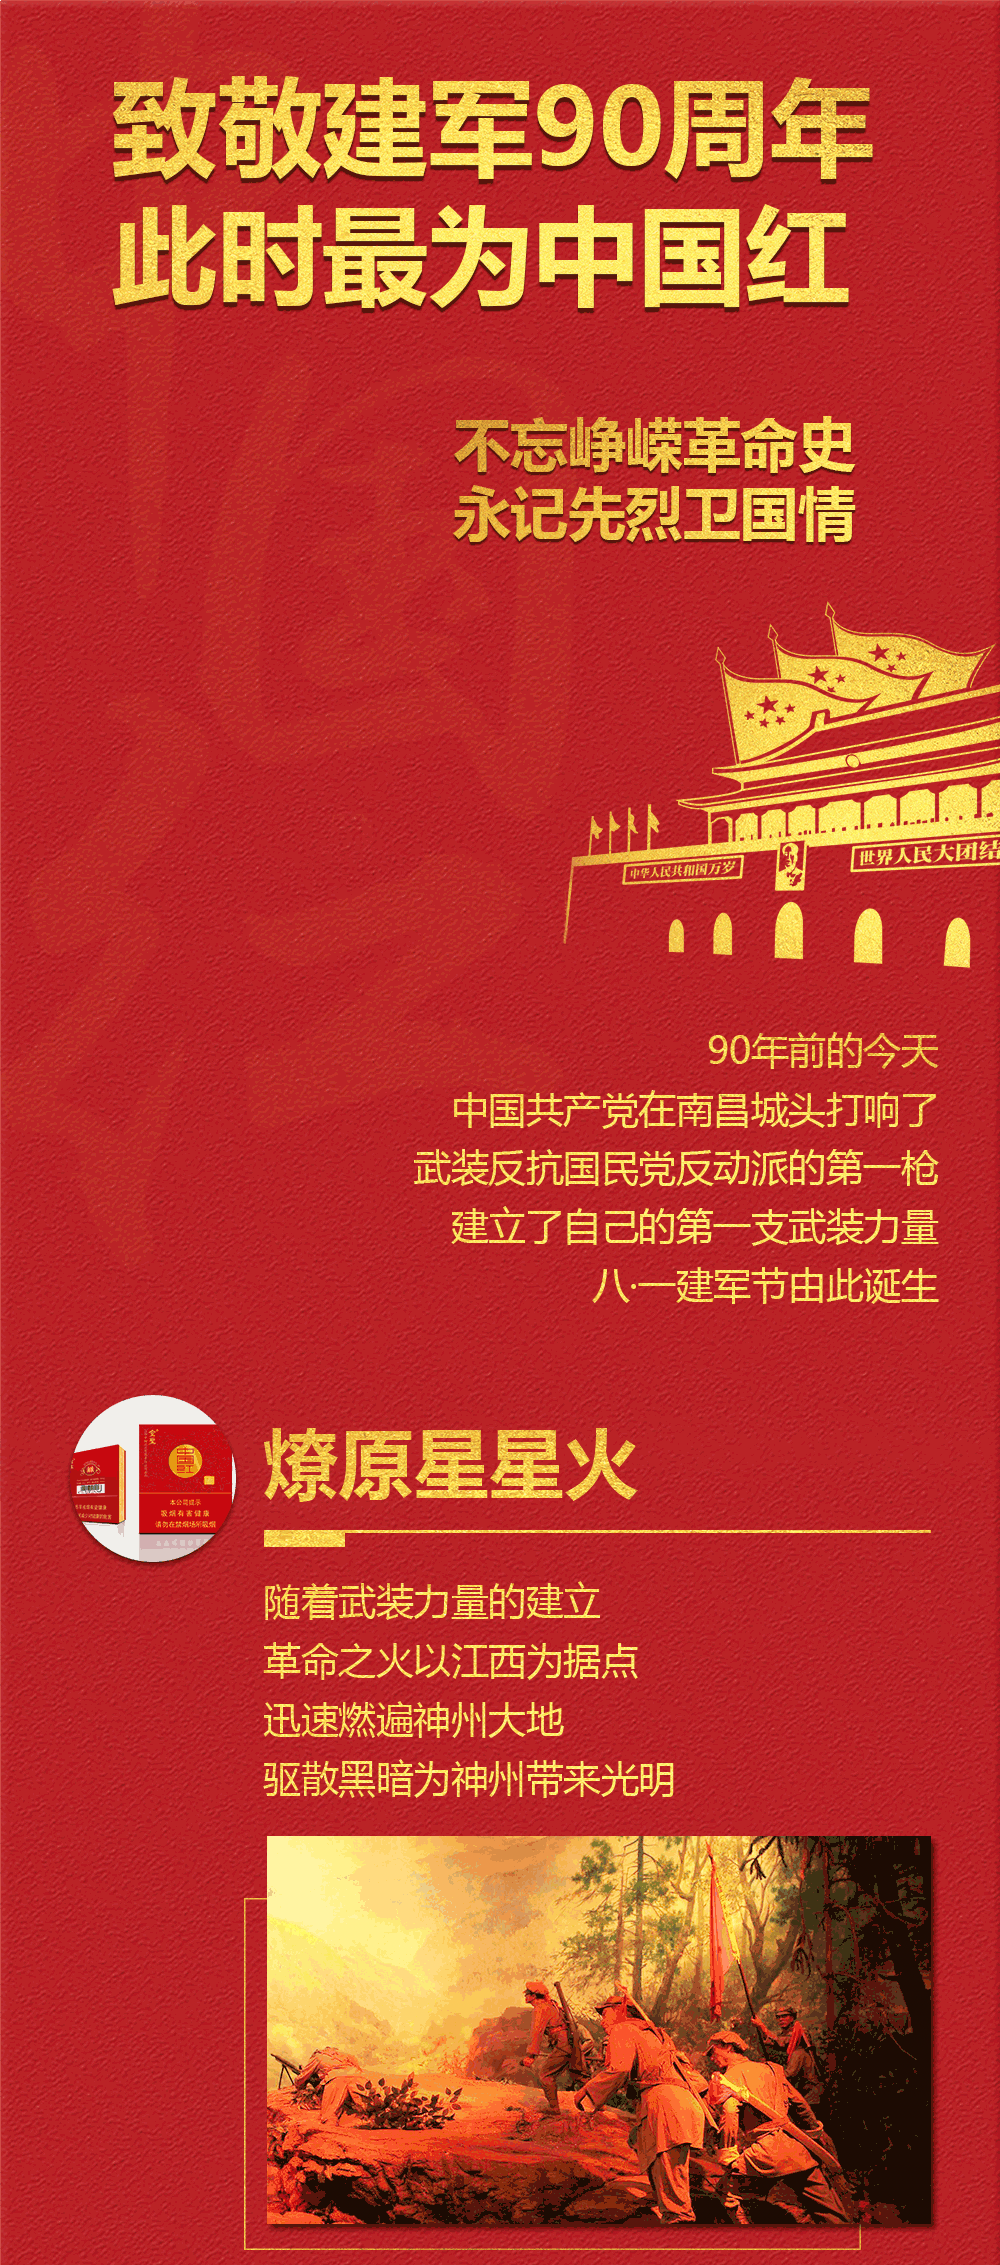 致敬建军90周年,此时最为中国红!